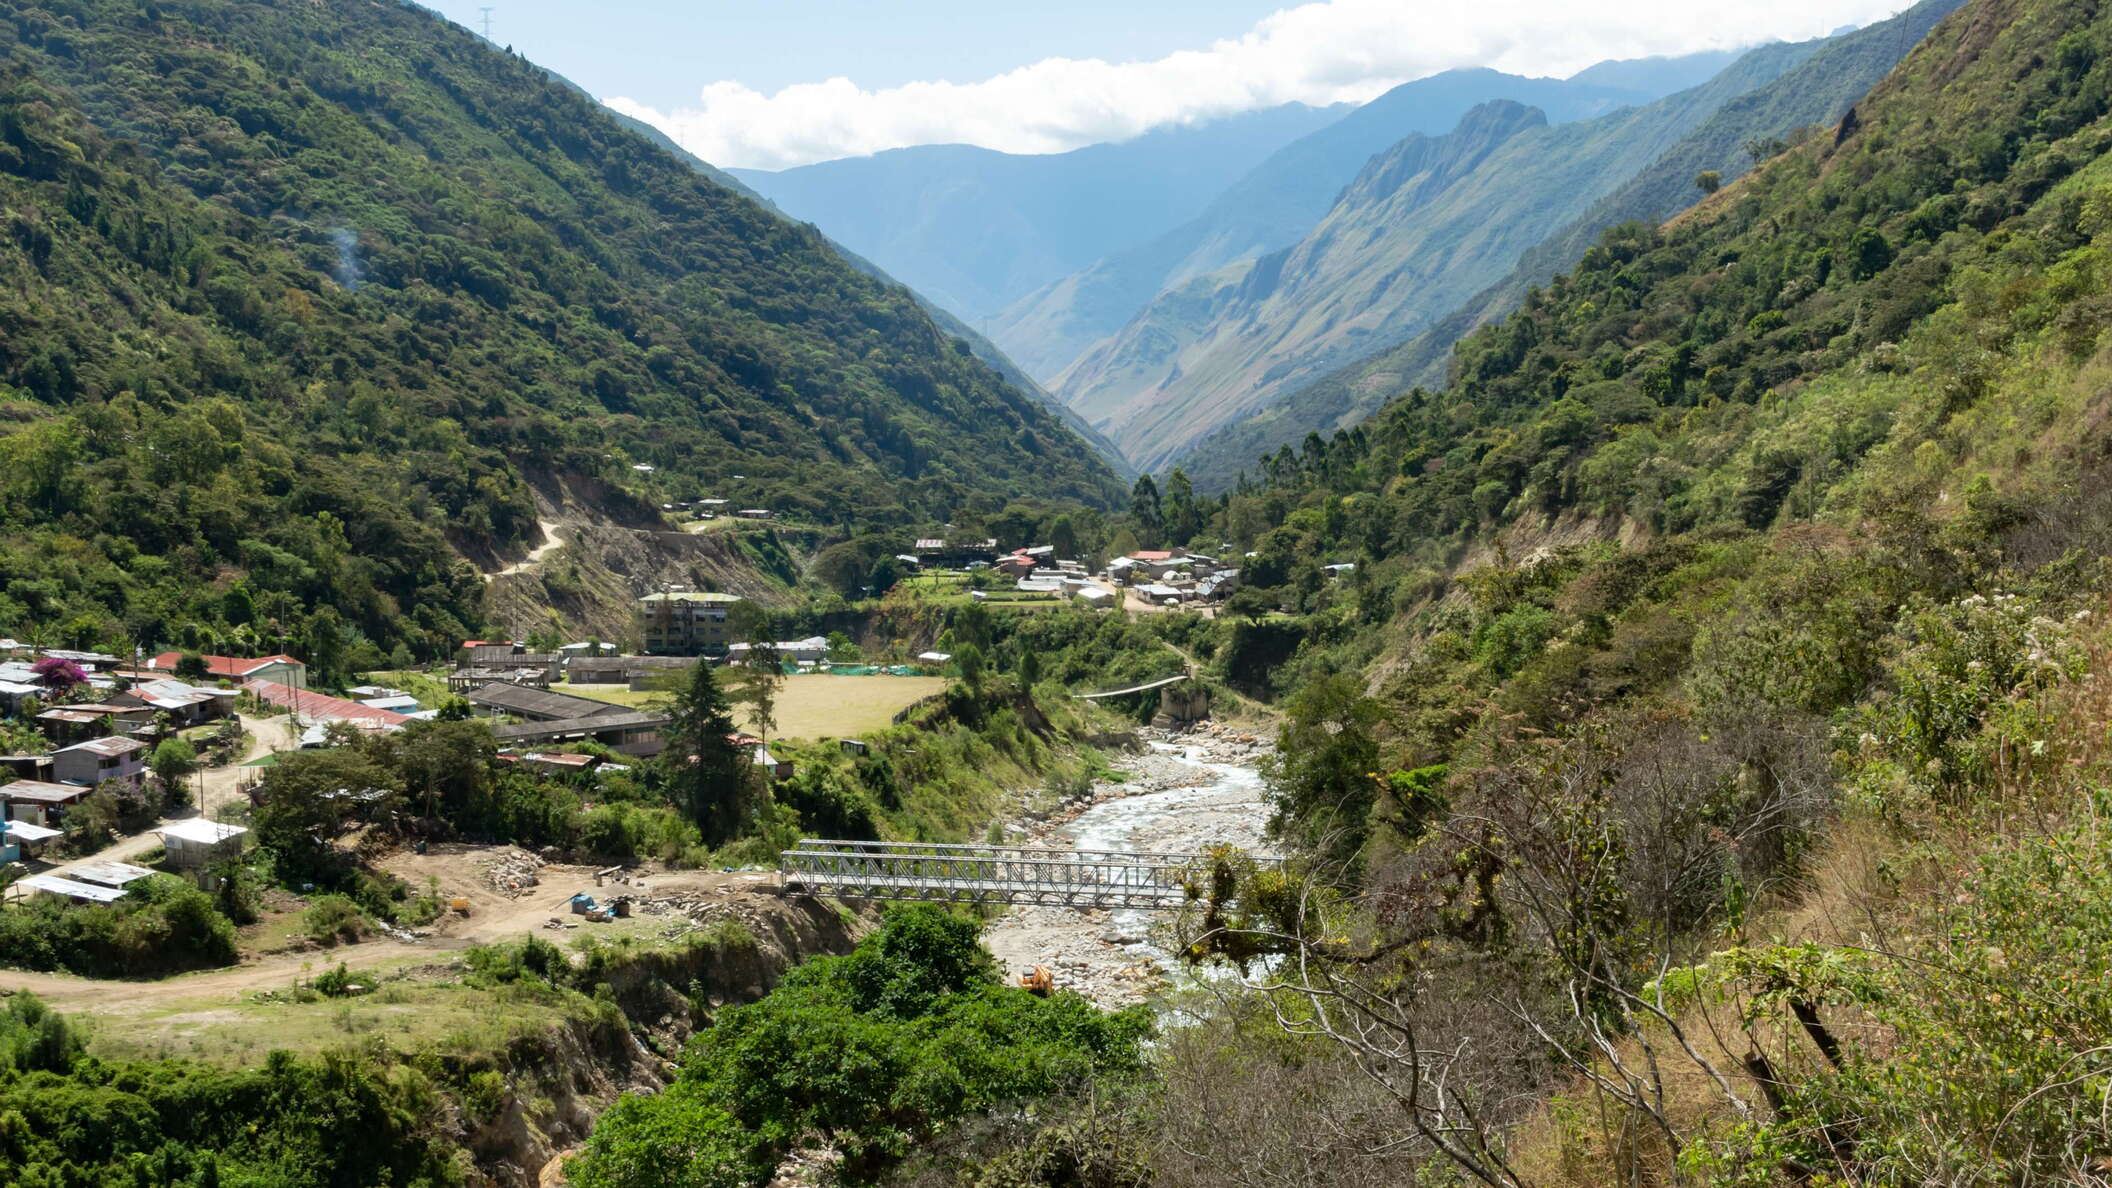 Santa Teresa Valley with Sahuayaco